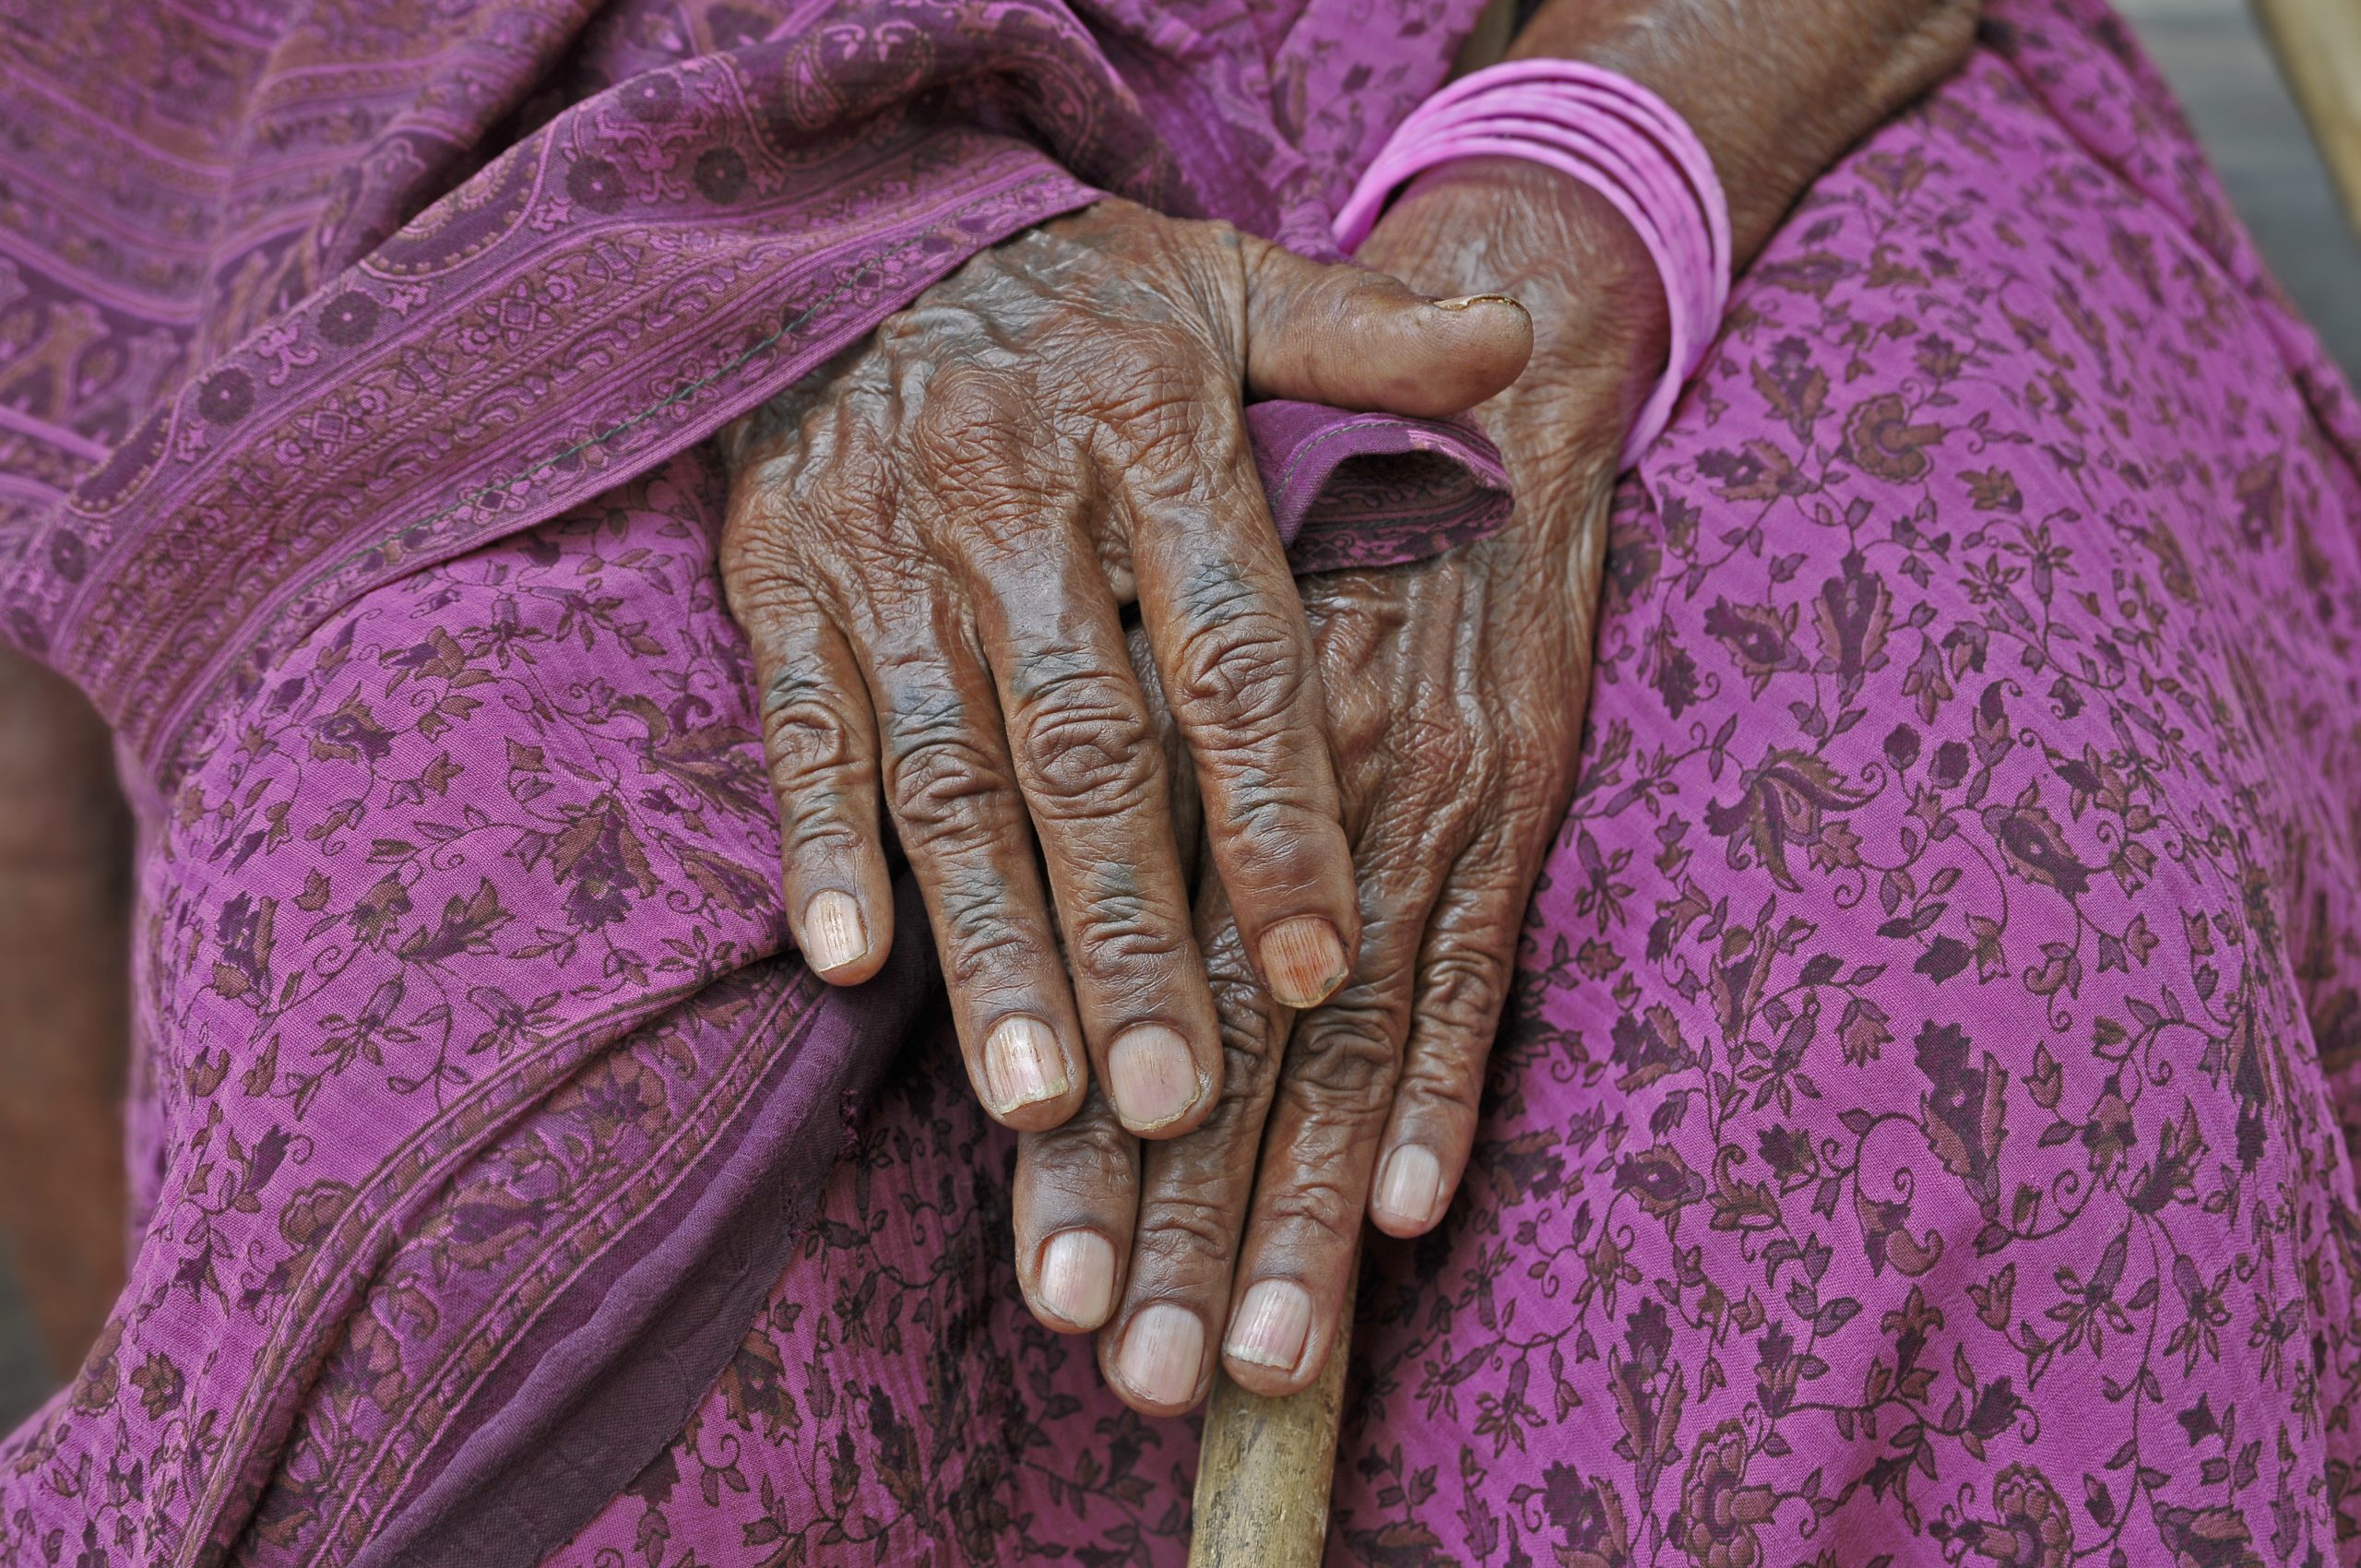 Índia: Quatro pessoas da mesma família acusadas de bruxaria foram assassinadas